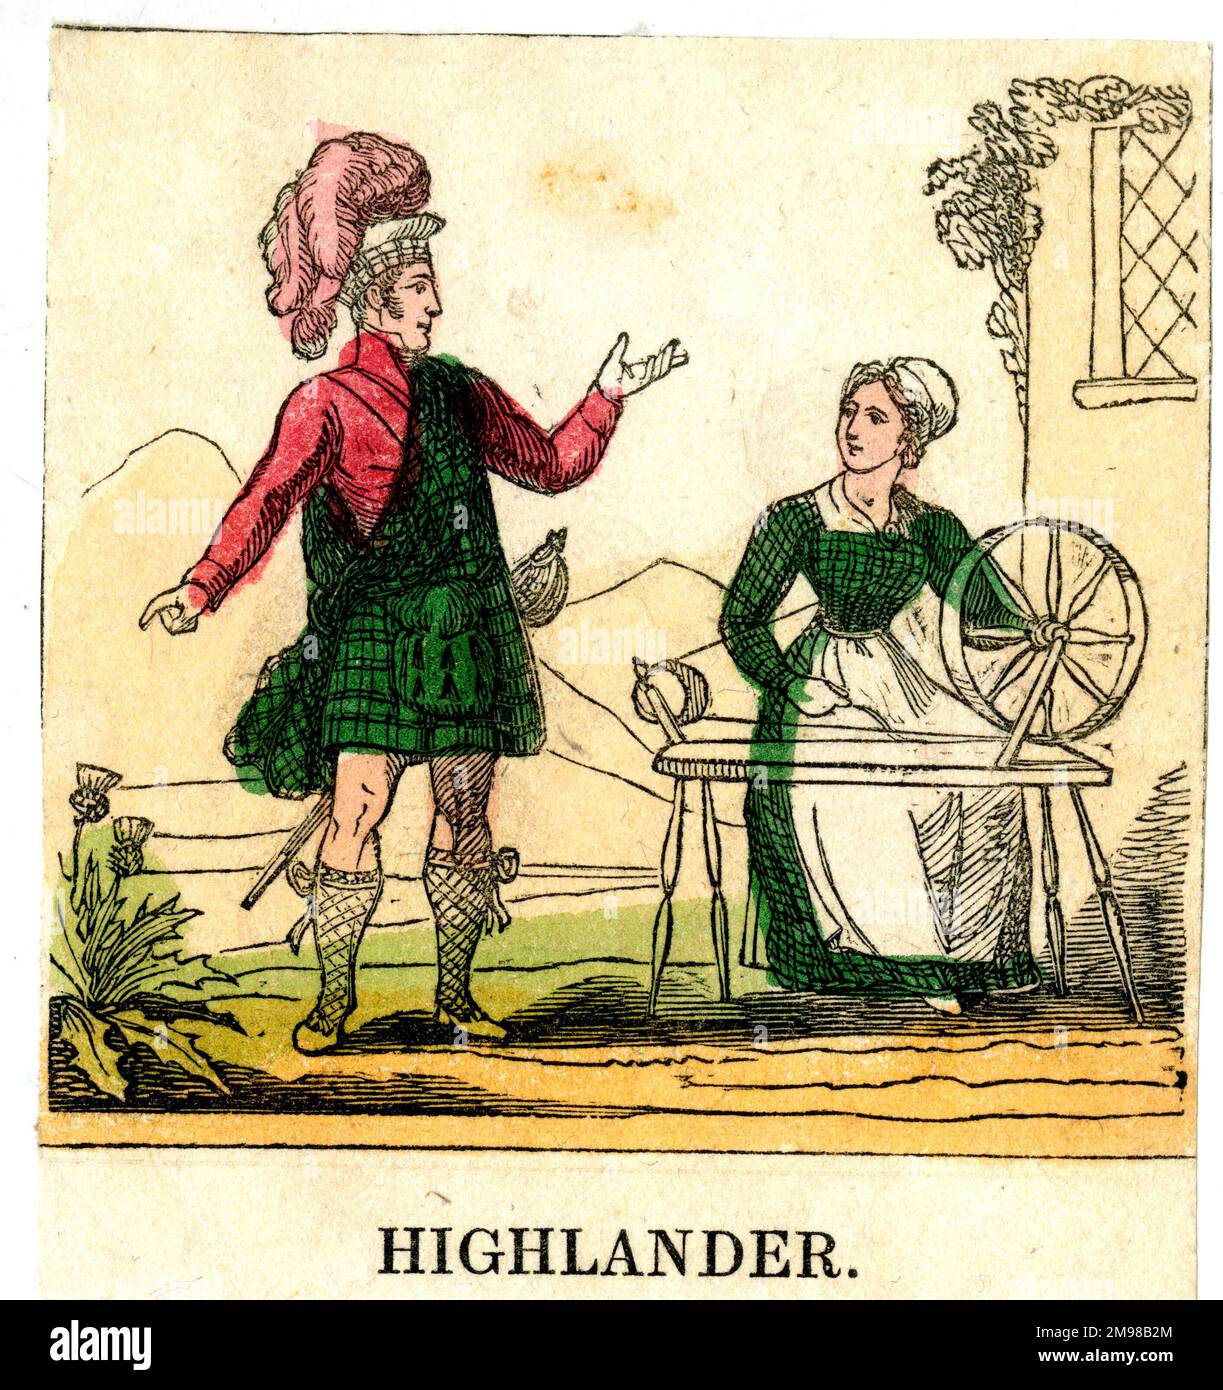 Schottischer Highlander und Frau, die sich dreht. Stockfoto